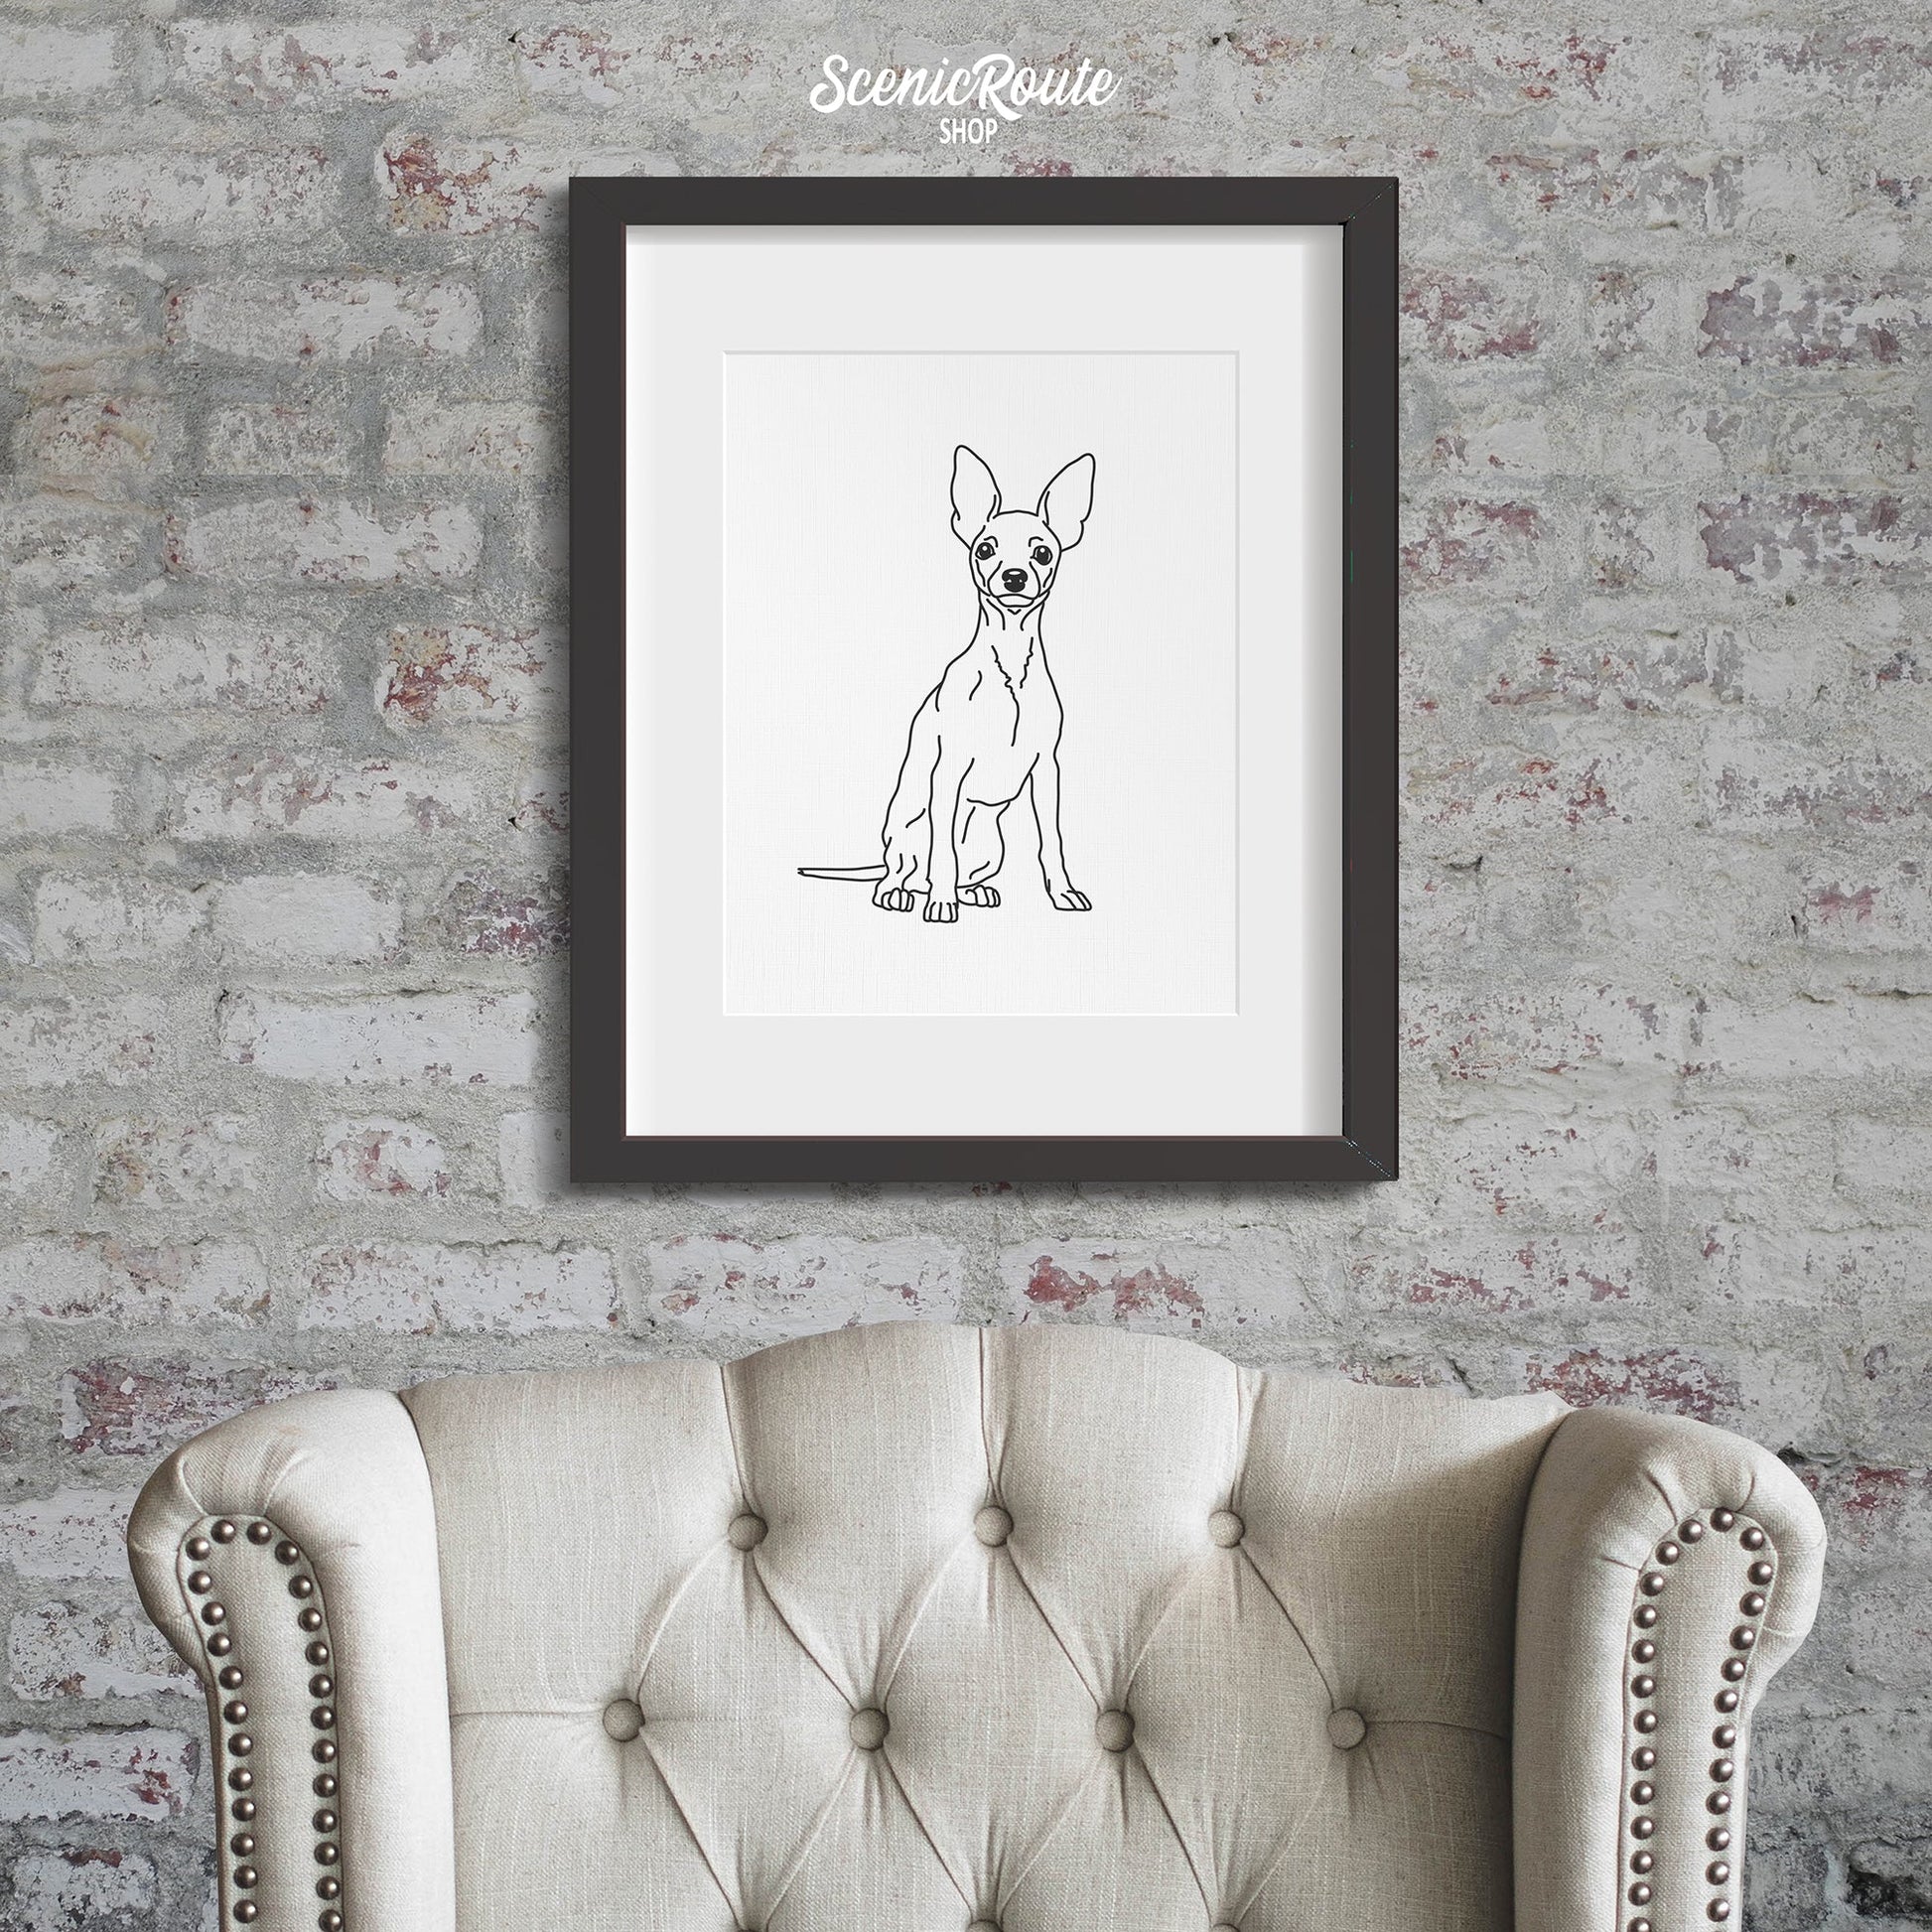 A framed line art drawing of a Miniature Pinscher dog on a brick wall above a chair